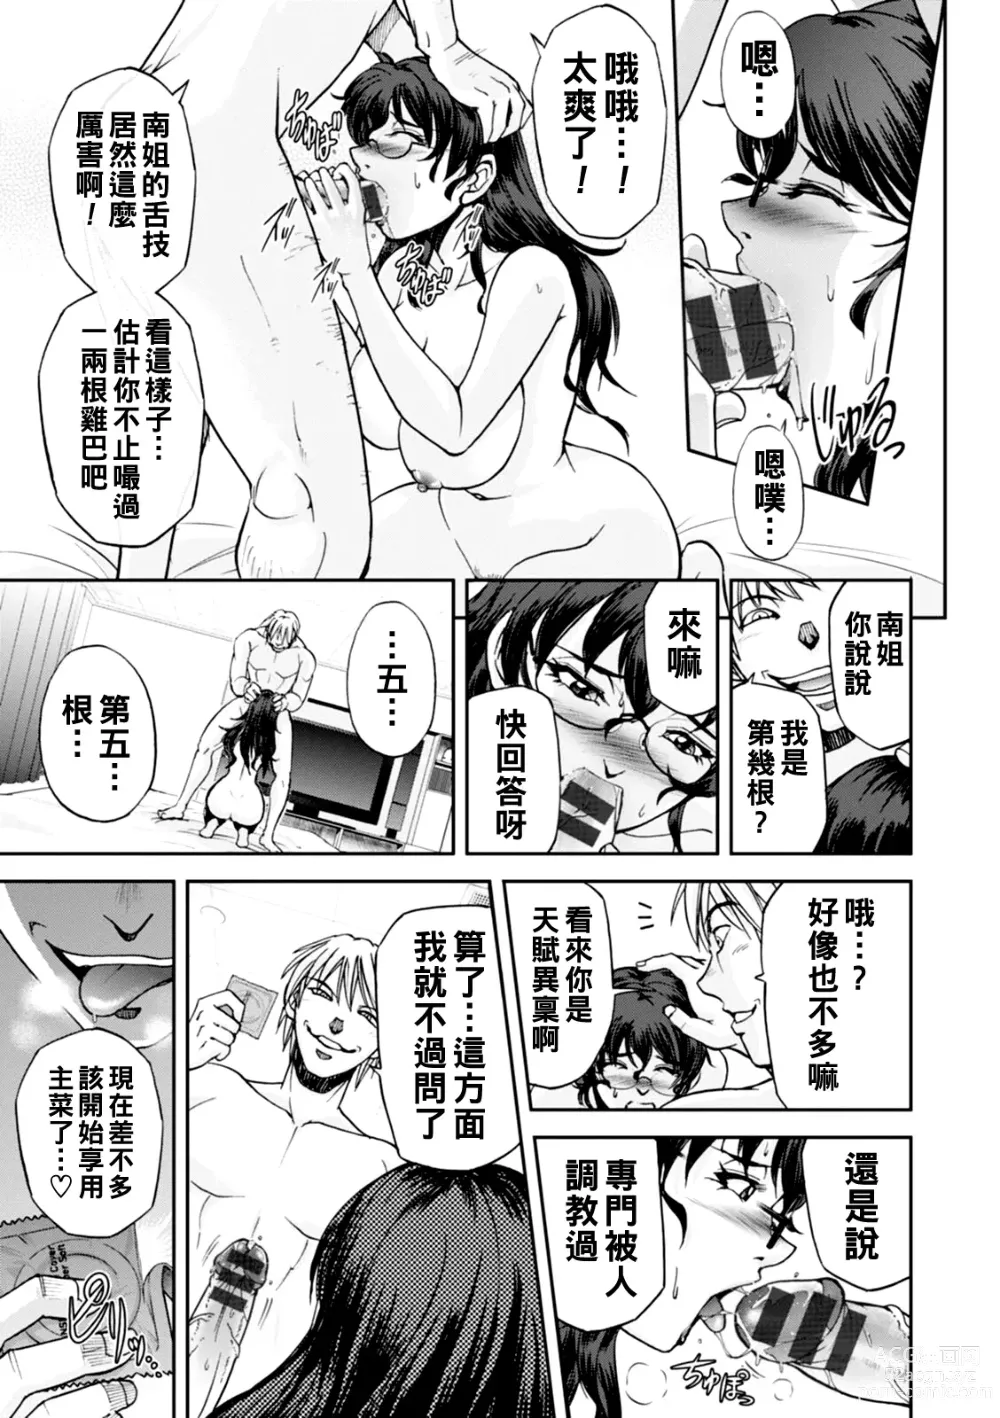 Page 14 of manga Maruhadaka no Minami-san Ch. 1-4